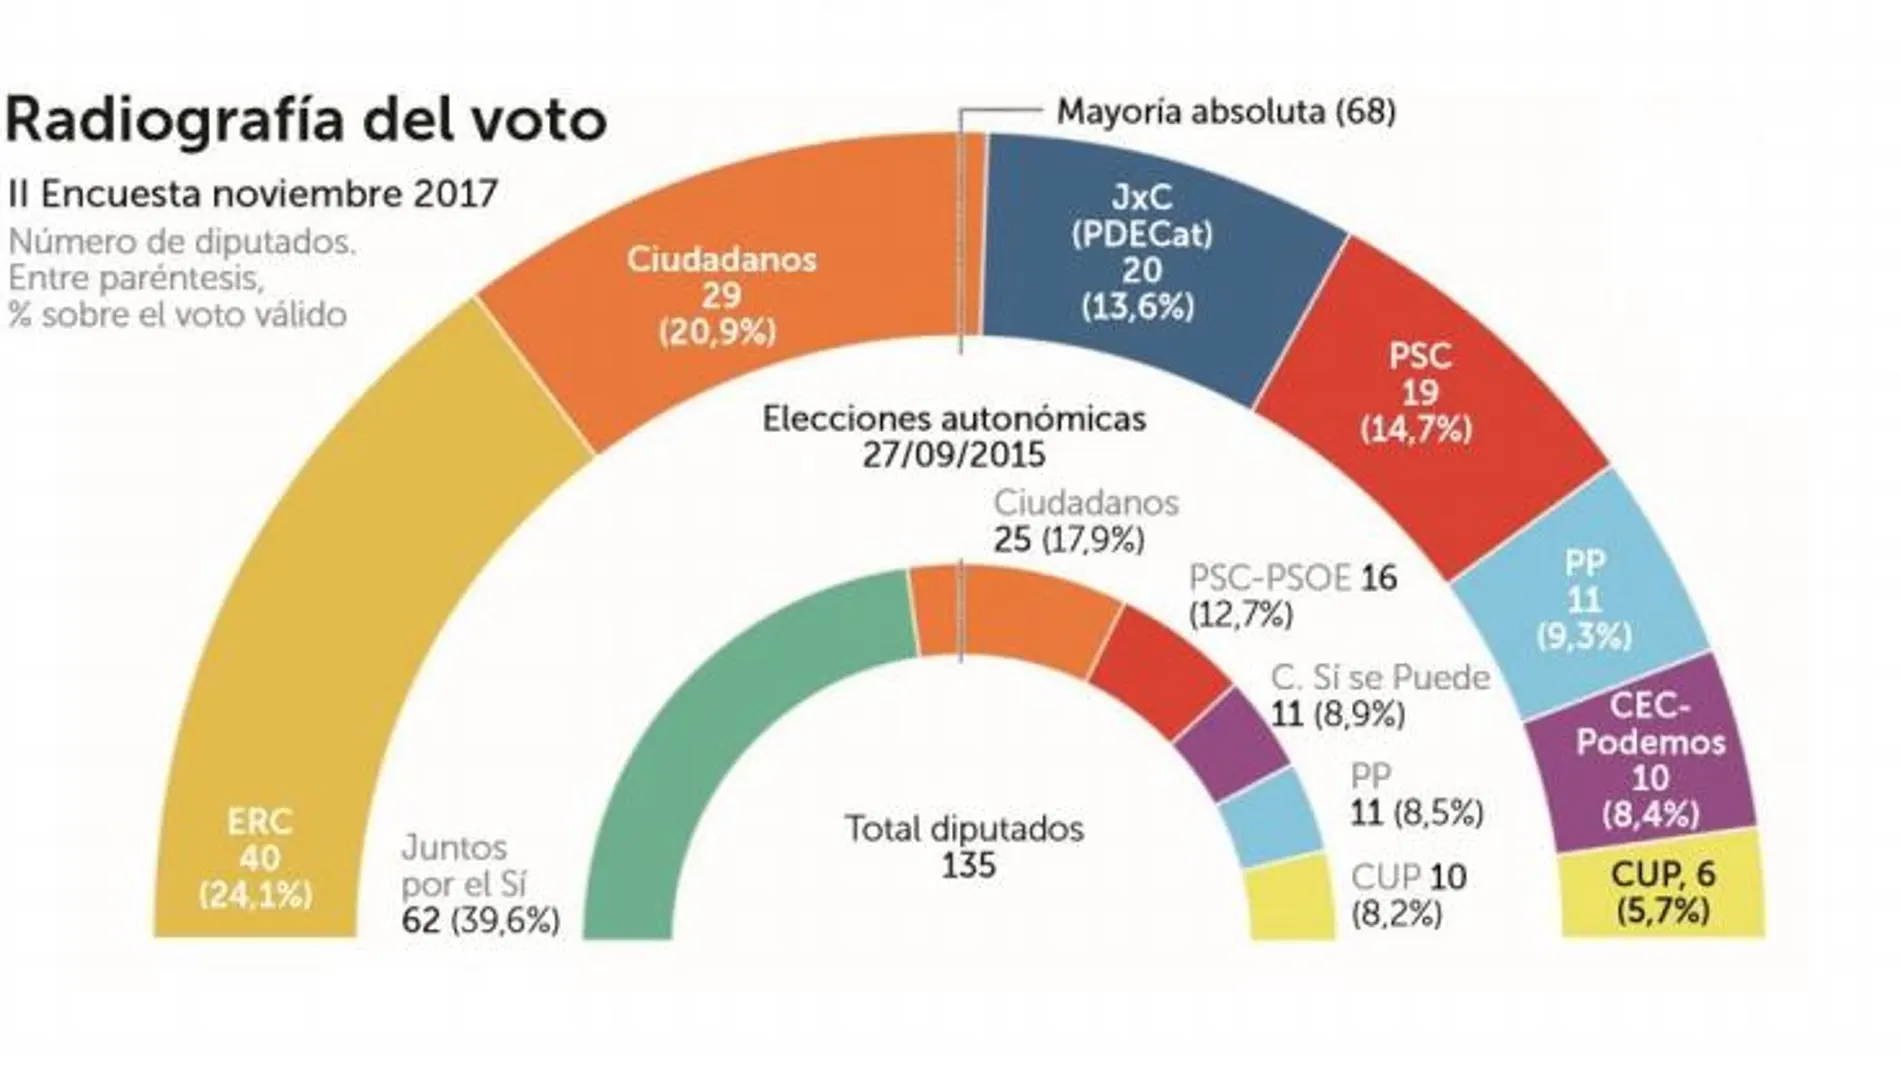 PP, PSOE y C’s obtendrían el 44’9% de los votos el 21-D frente al 43’4% de ERC, JxC y la CUP